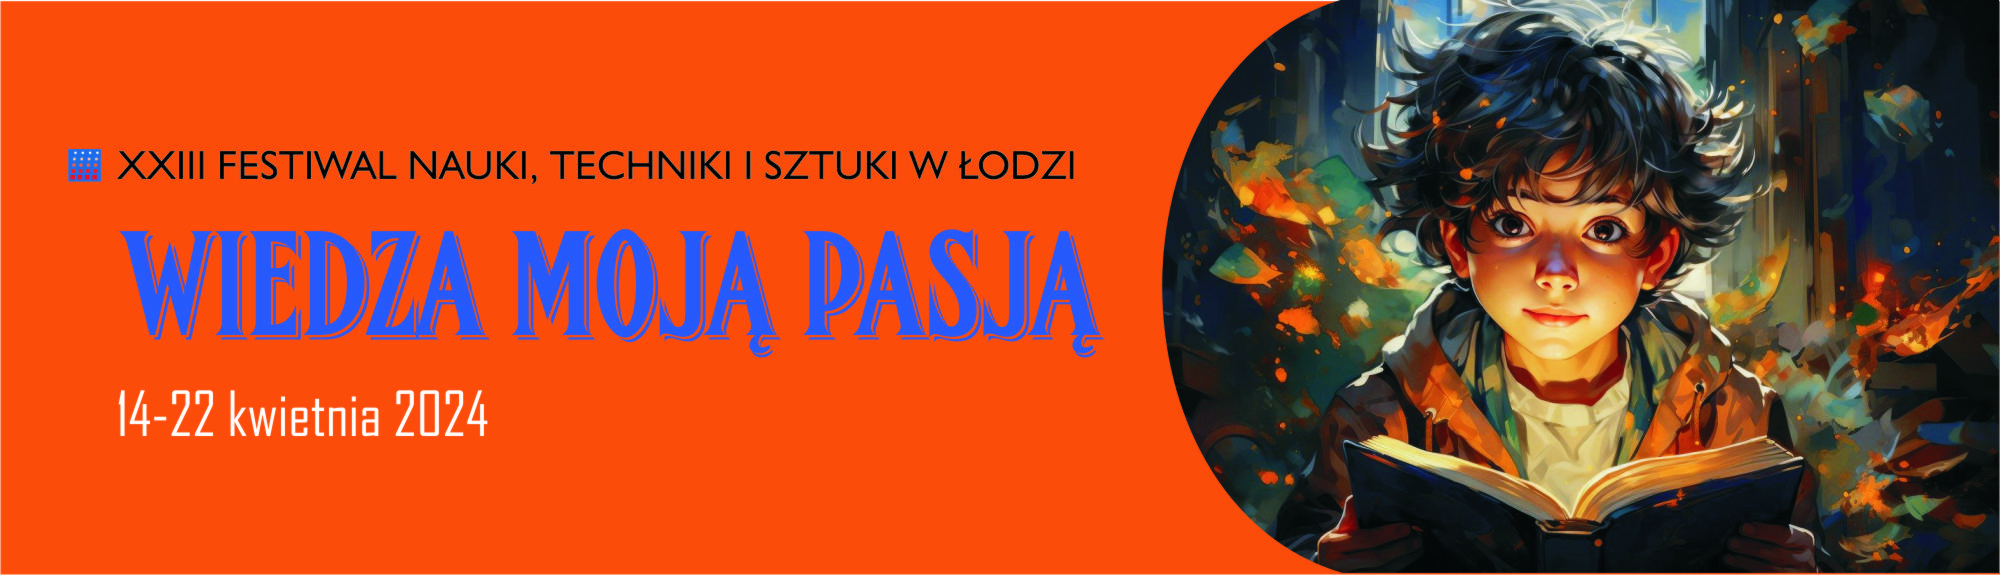 XXIII Festiwal Nauki, Techniki i Sztuki w Łodzi plakat